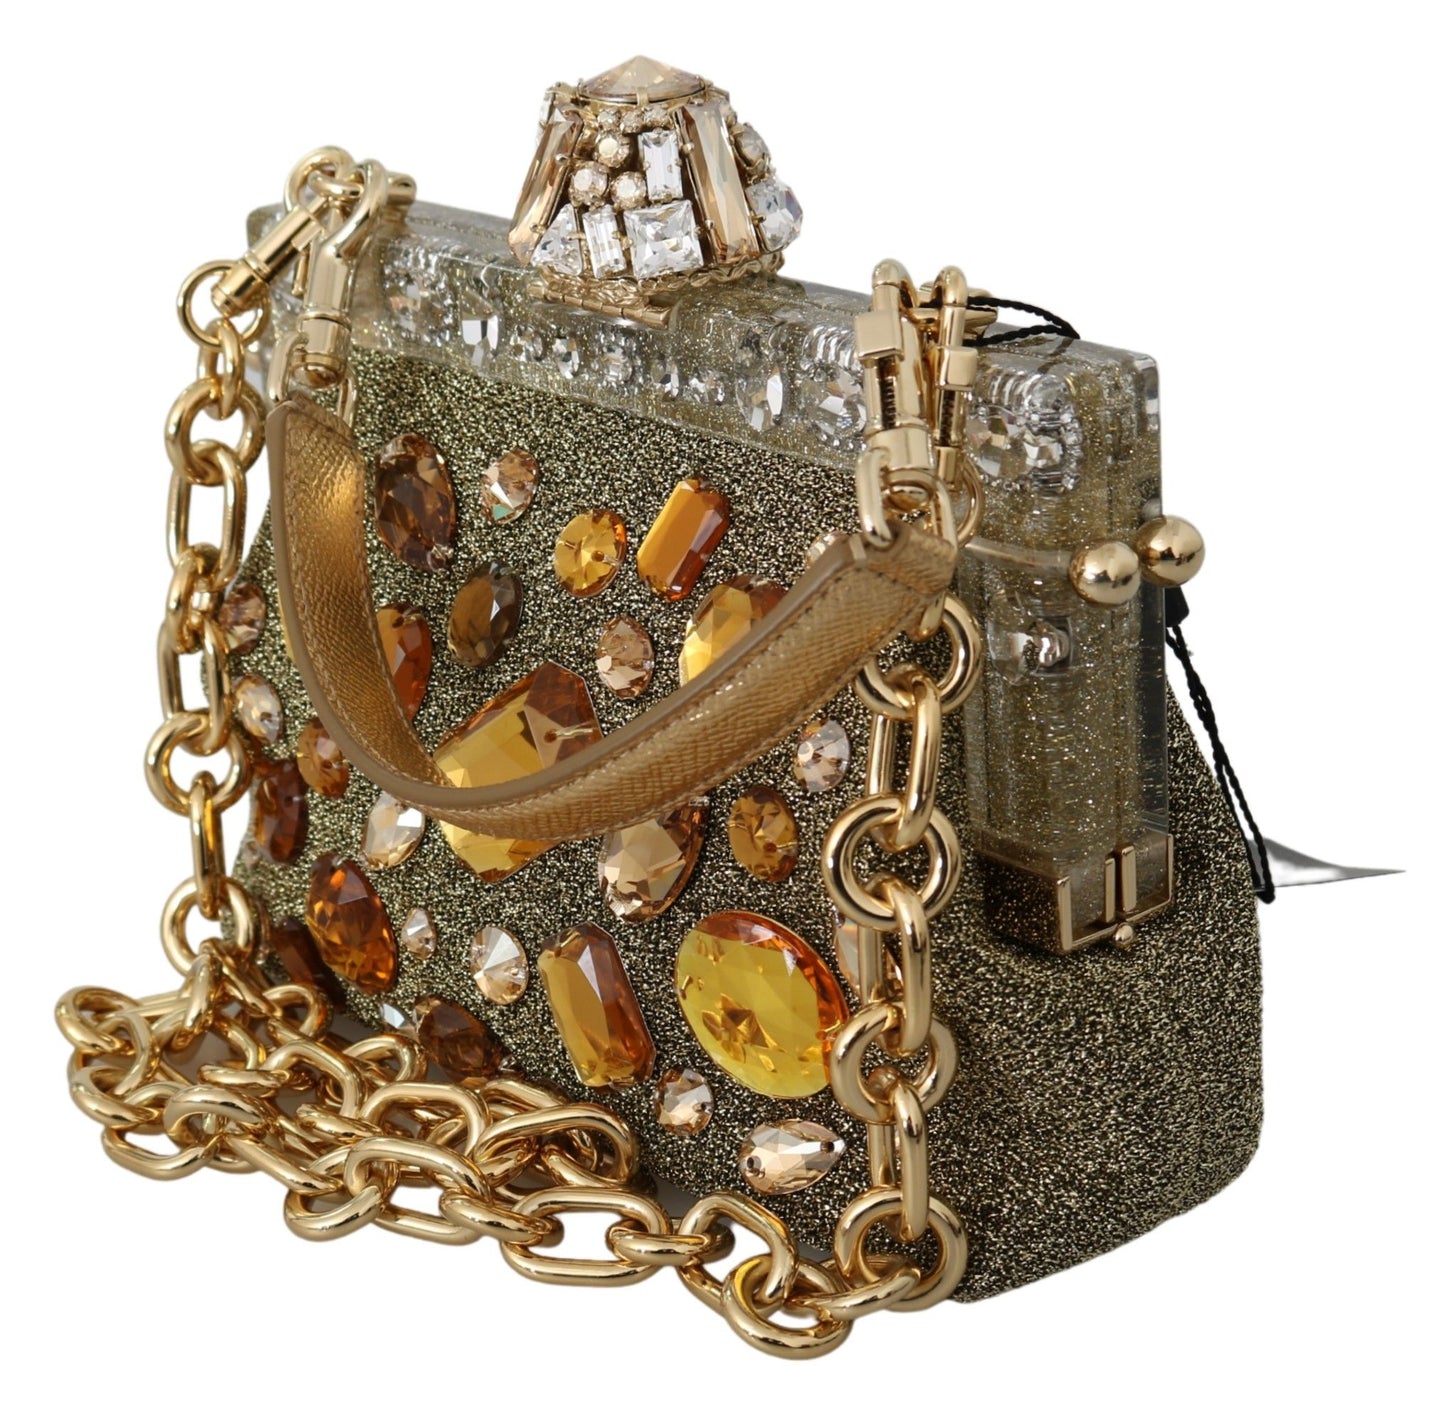 Gold VANDA Crystal Clutch Handbag Shoulder Bag